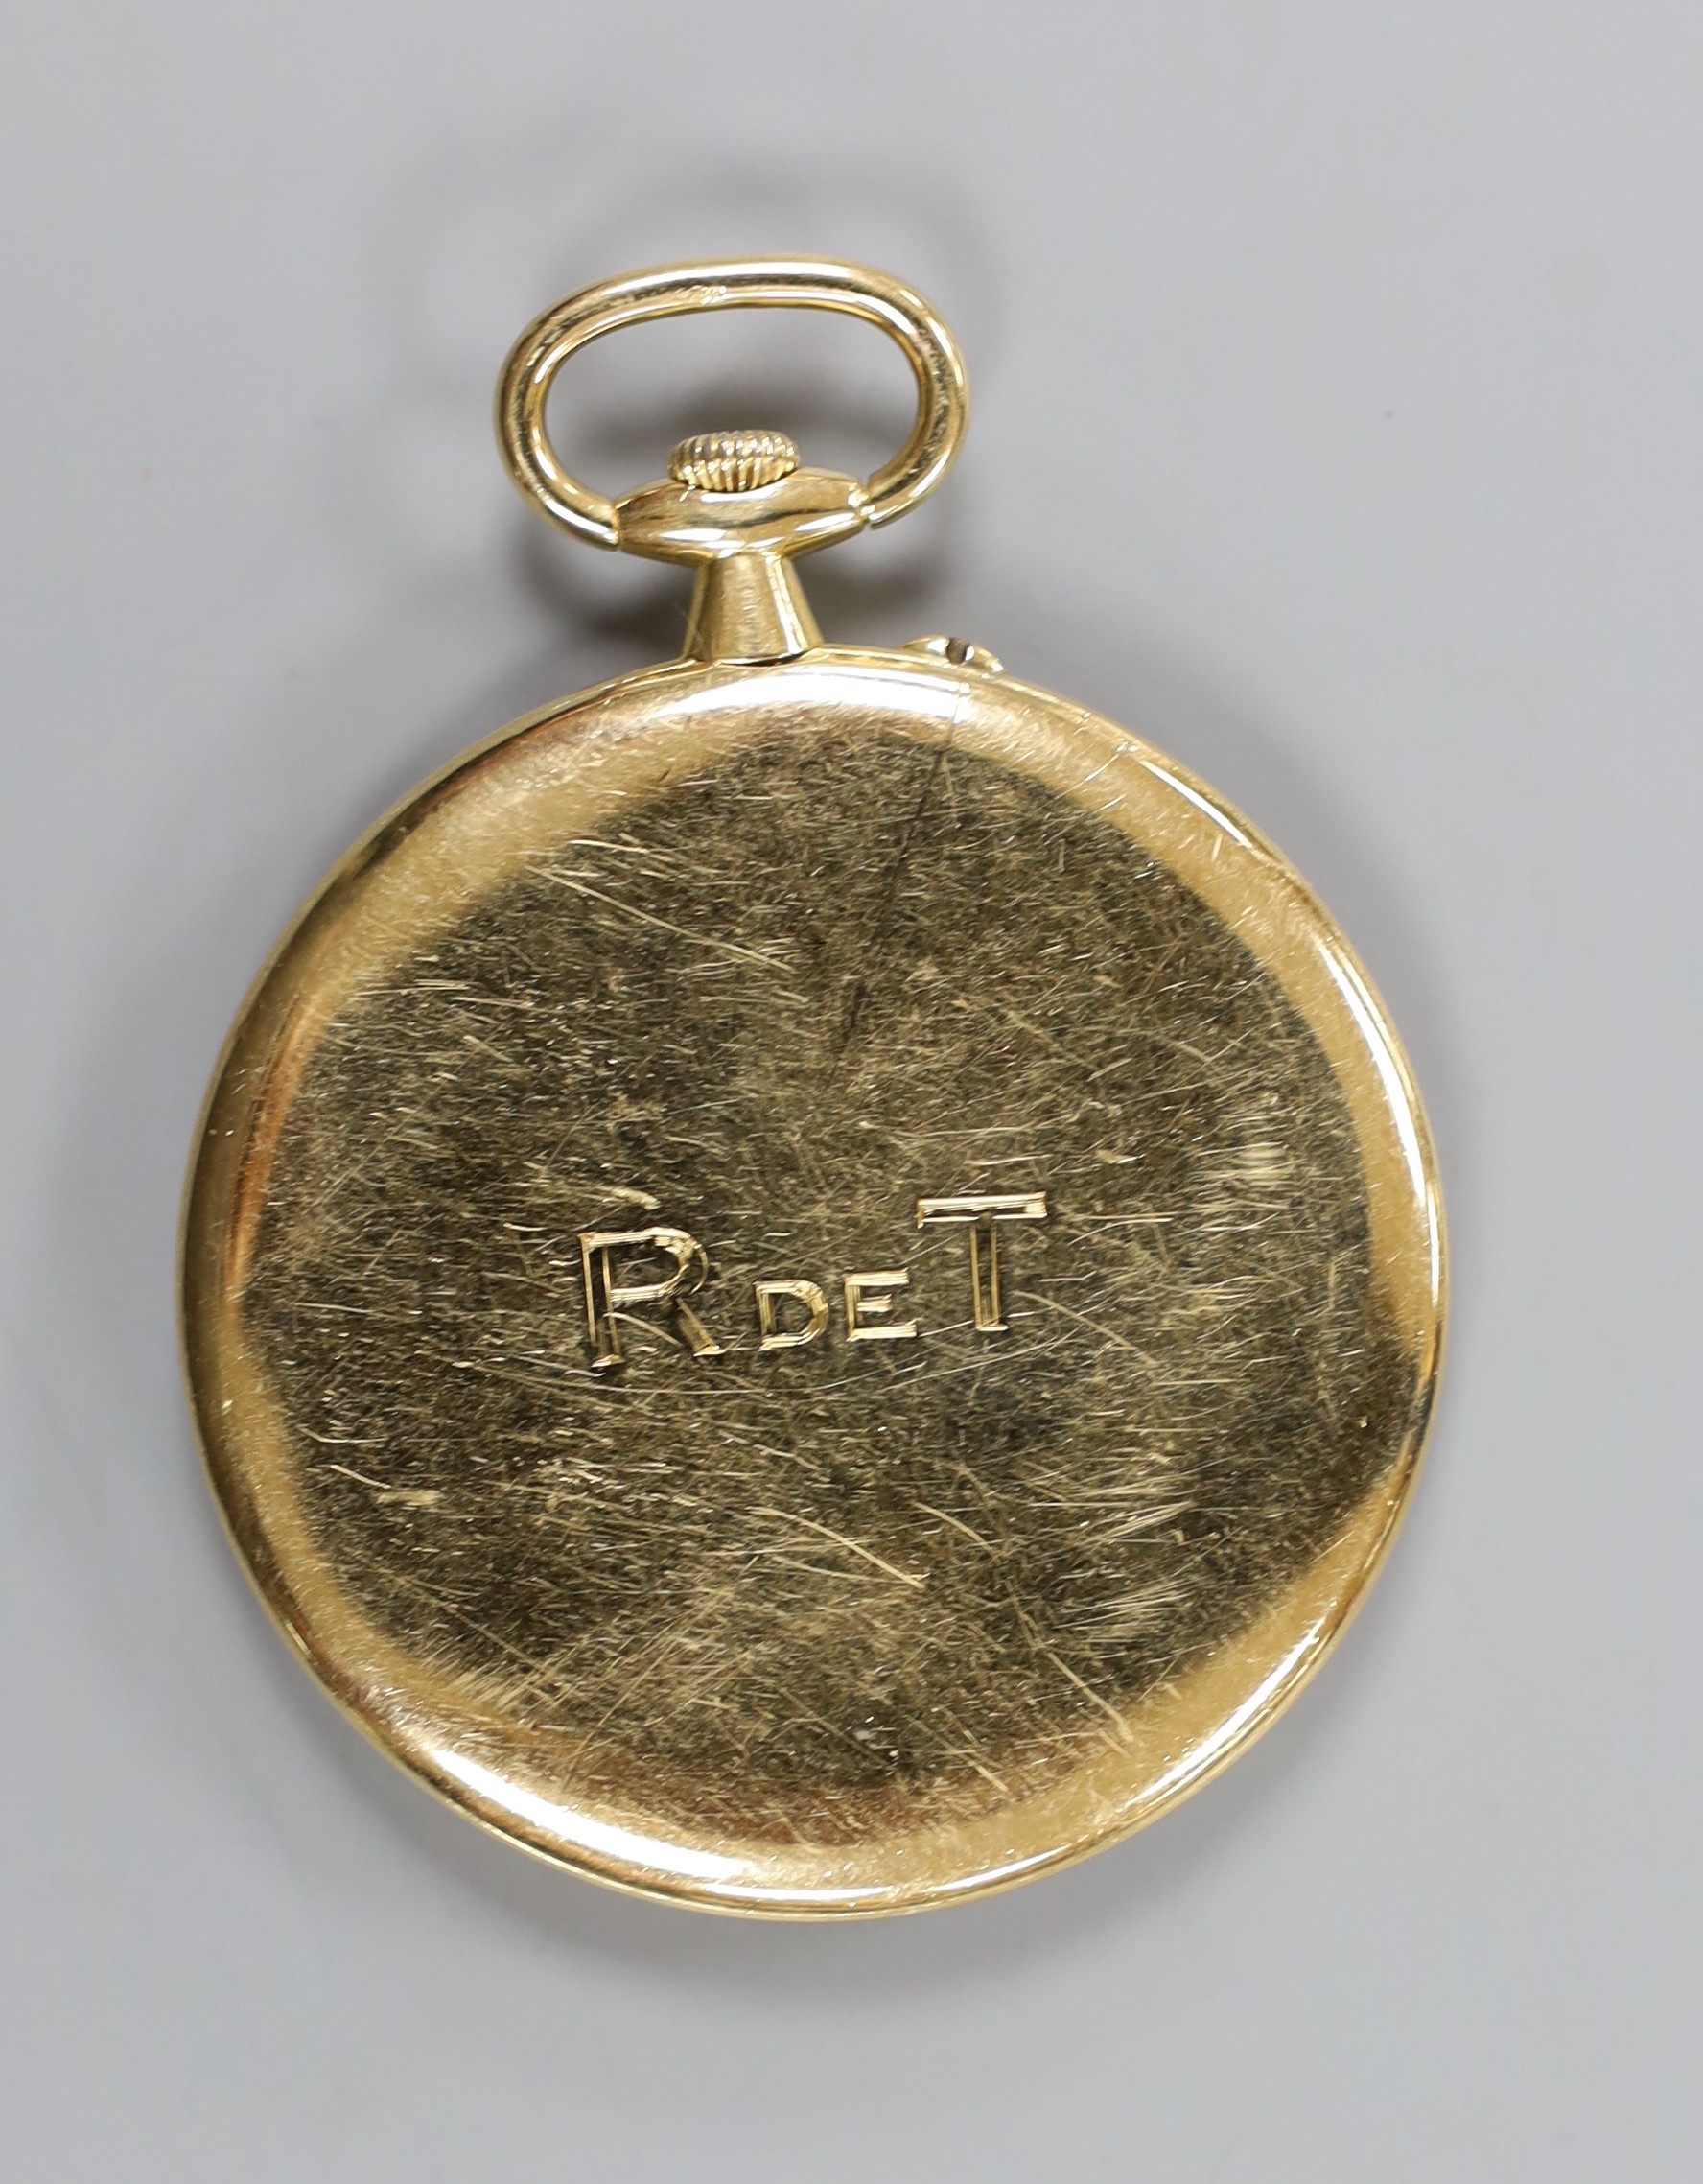 A continental yellow metal open faced dress pocket watch, case diameter 45mm, gross weight 45.8 grams.